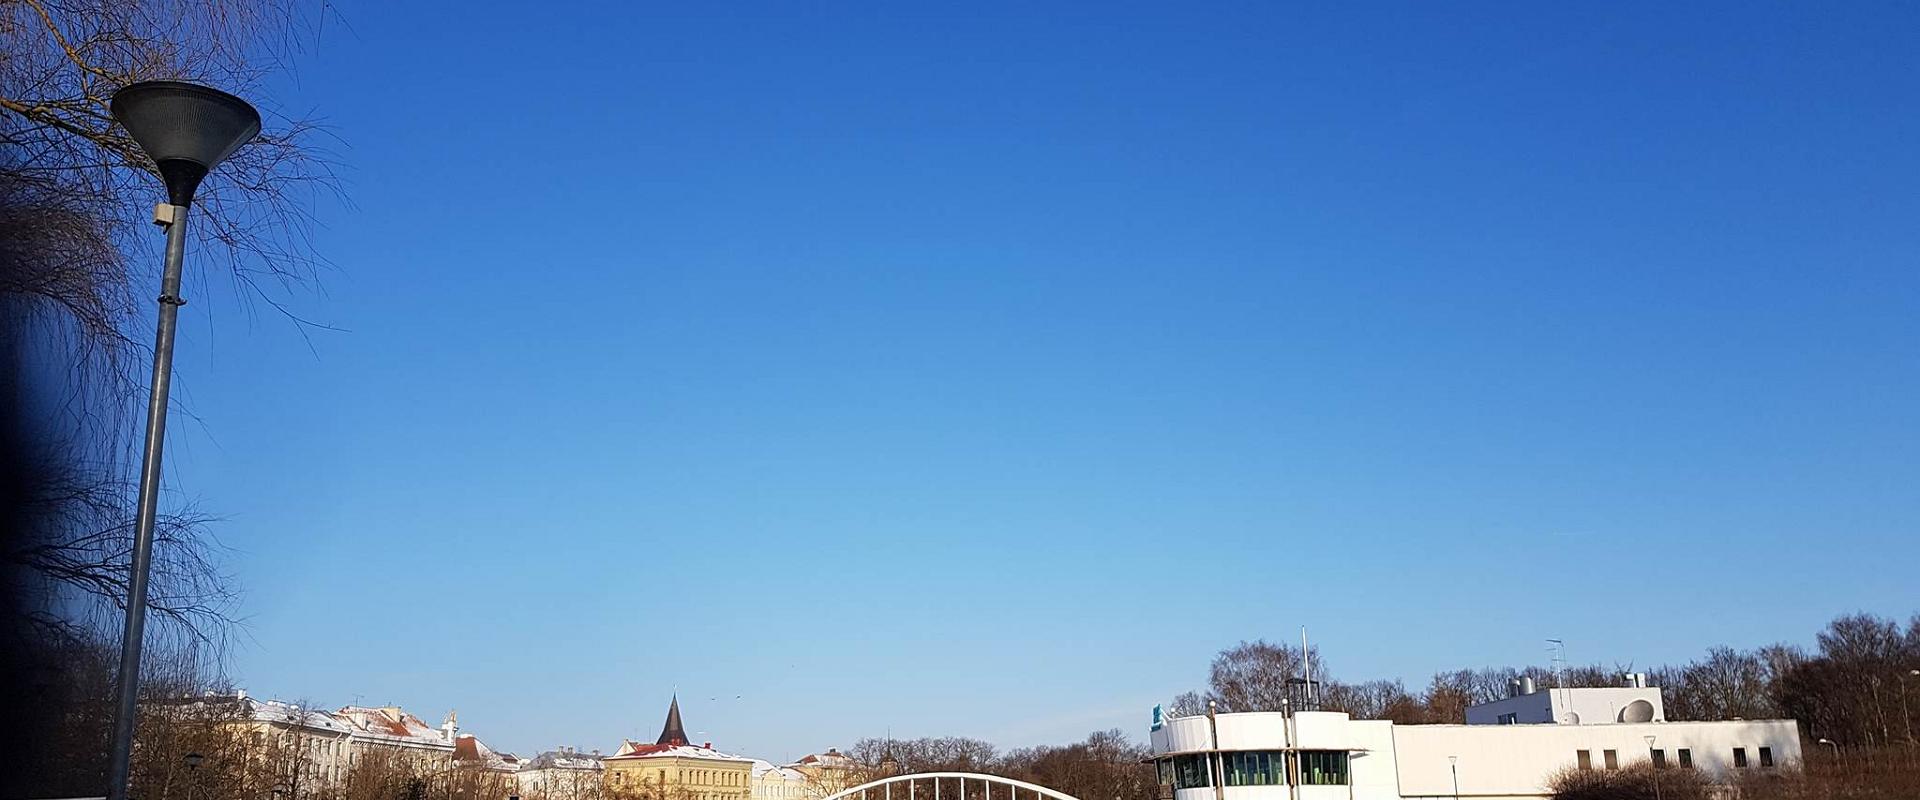 Die Bogenbrücke im Winter und zugefrorener Emajõgi